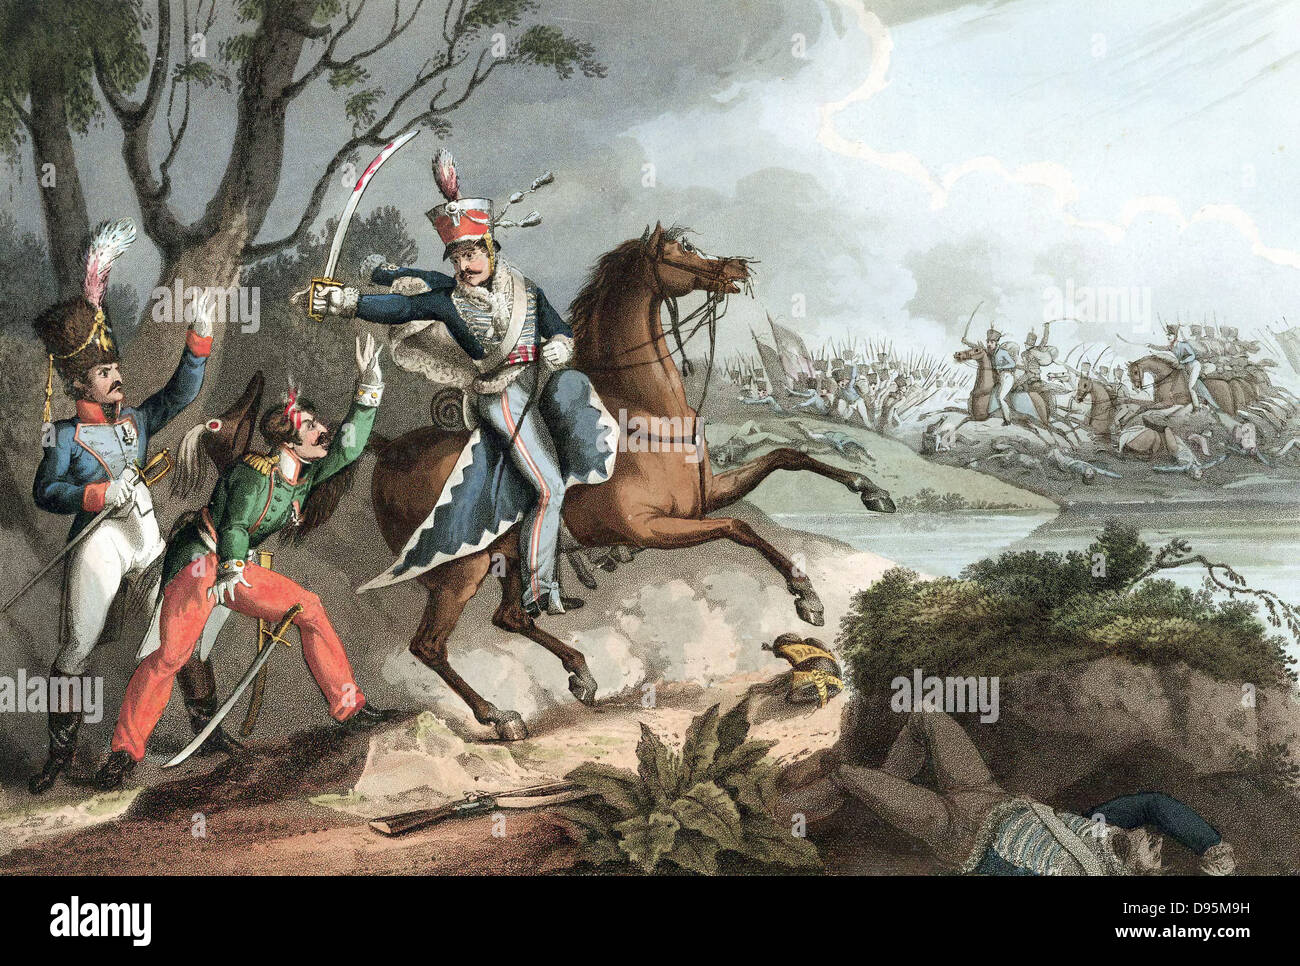 Guerres napoléoniennes : Bataille d'Albuera 16 mai 1811, Beresford bat Soult. Le sergent de la 18e Hussars (British) prend des officiers français prisonniers. L'aquatinte colorée à la main après W Heath 1817. Banque D'Images